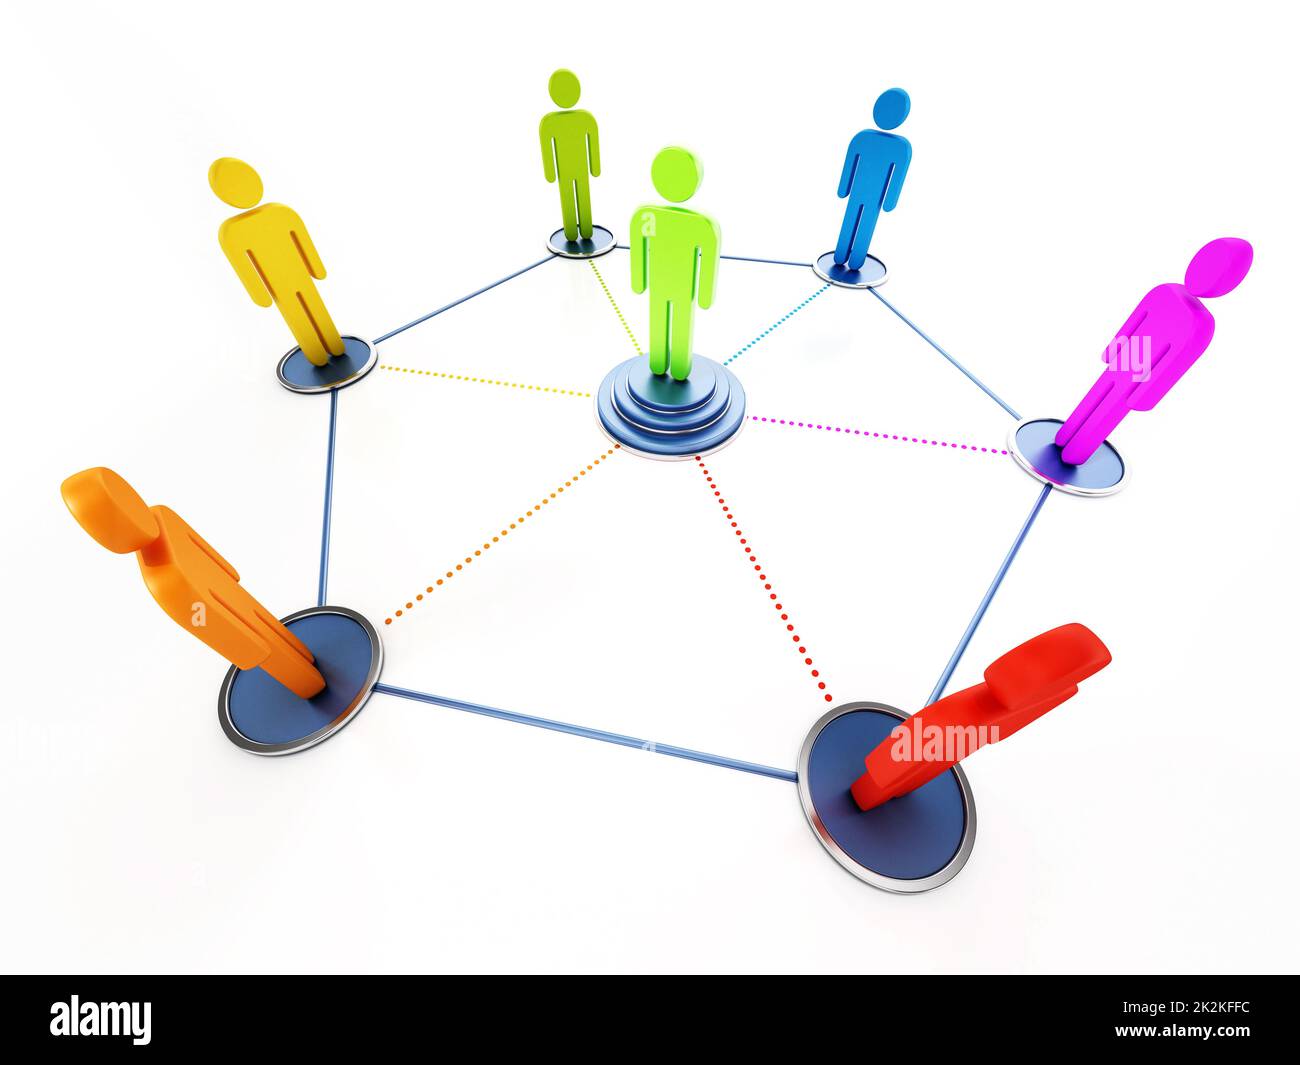 Des personnes connectées avec une figure de proue au centre. 3D illustration Banque D'Images